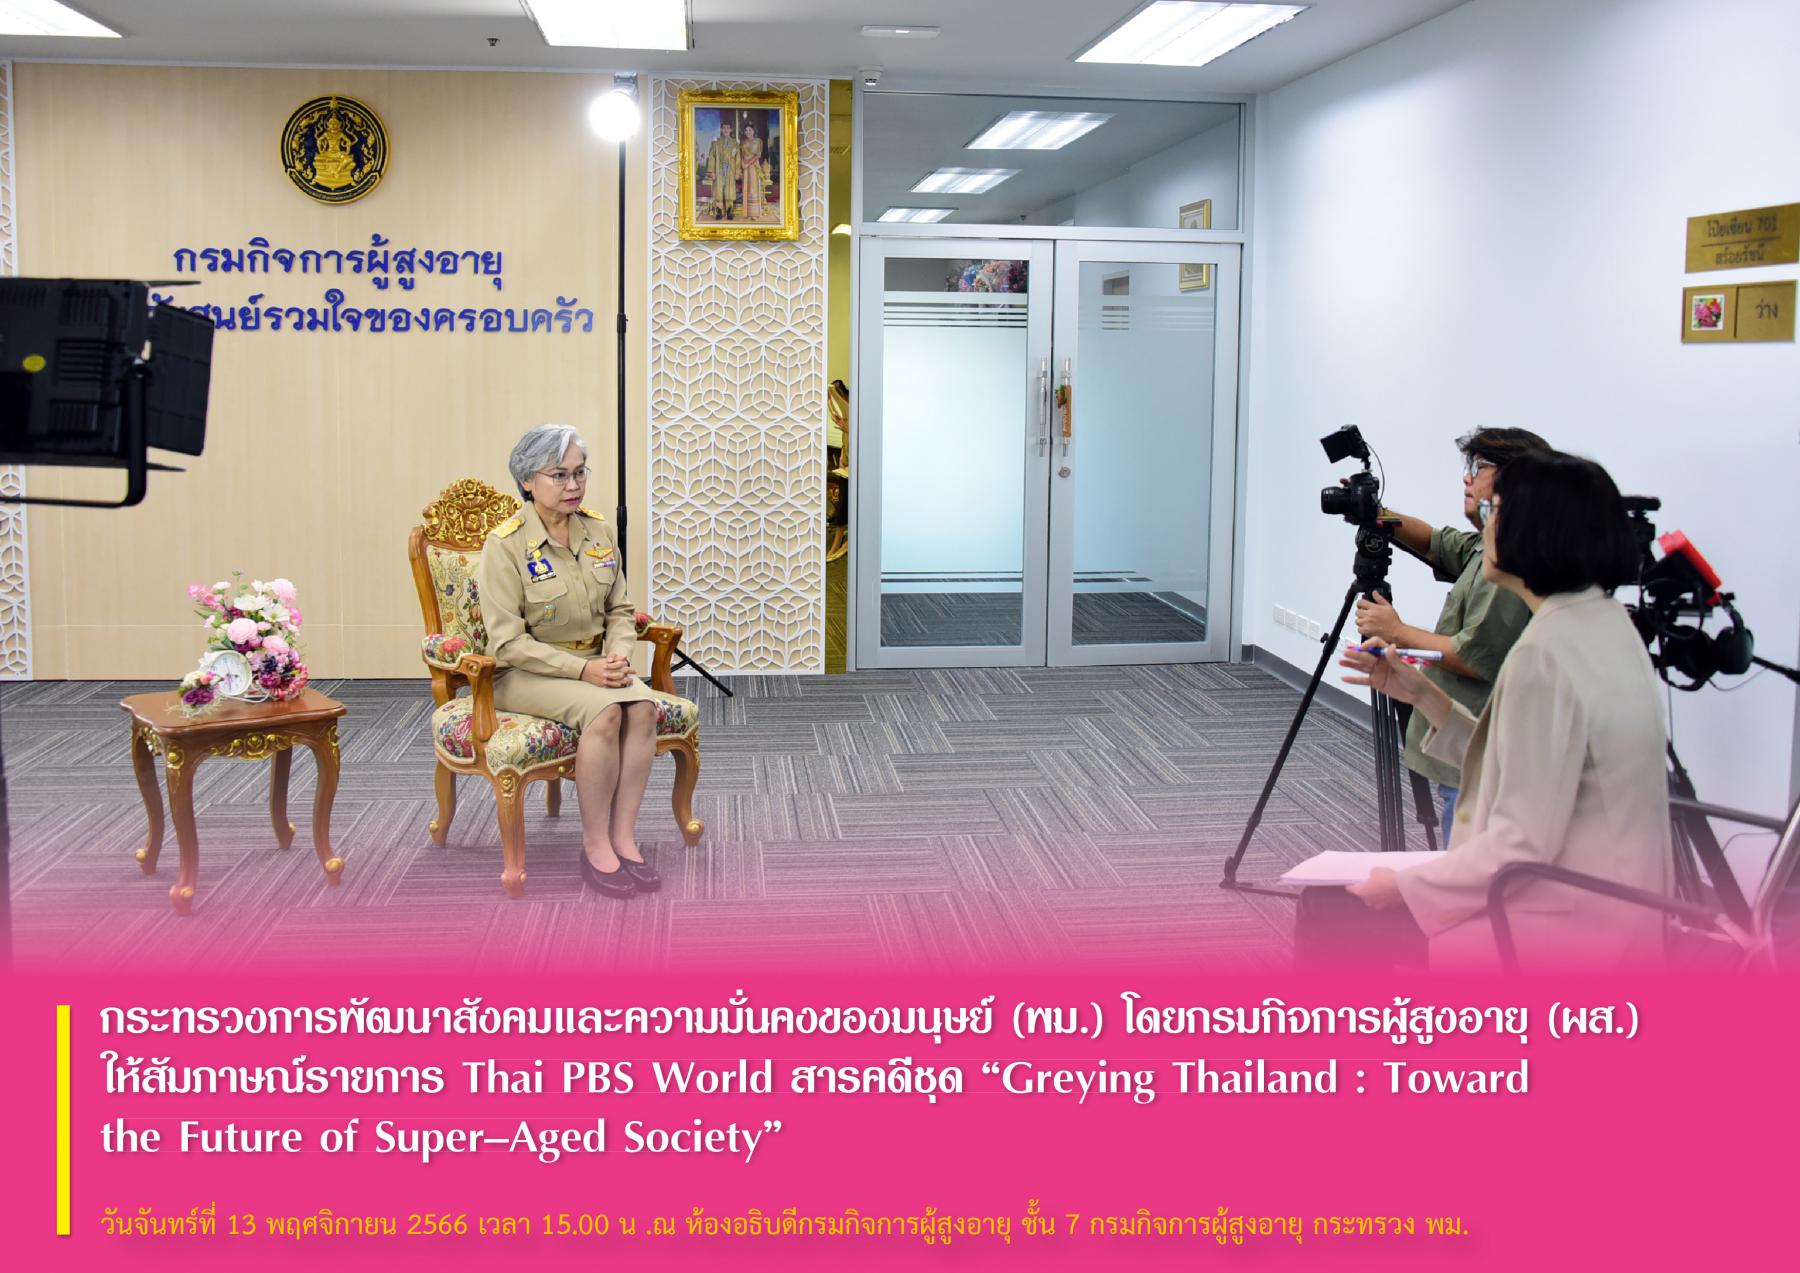 กระทรวงการพัฒนาสังคมและความมั่นคงของมนุษย์ (พม.) โดยกรมกิจการผู้สูงอายุ (ผส.) ให้สัมภาษณ์รายการ Thai PBS World สารคดีชุด “Greying Thailand : Toward the Future of Super–Aged Society”